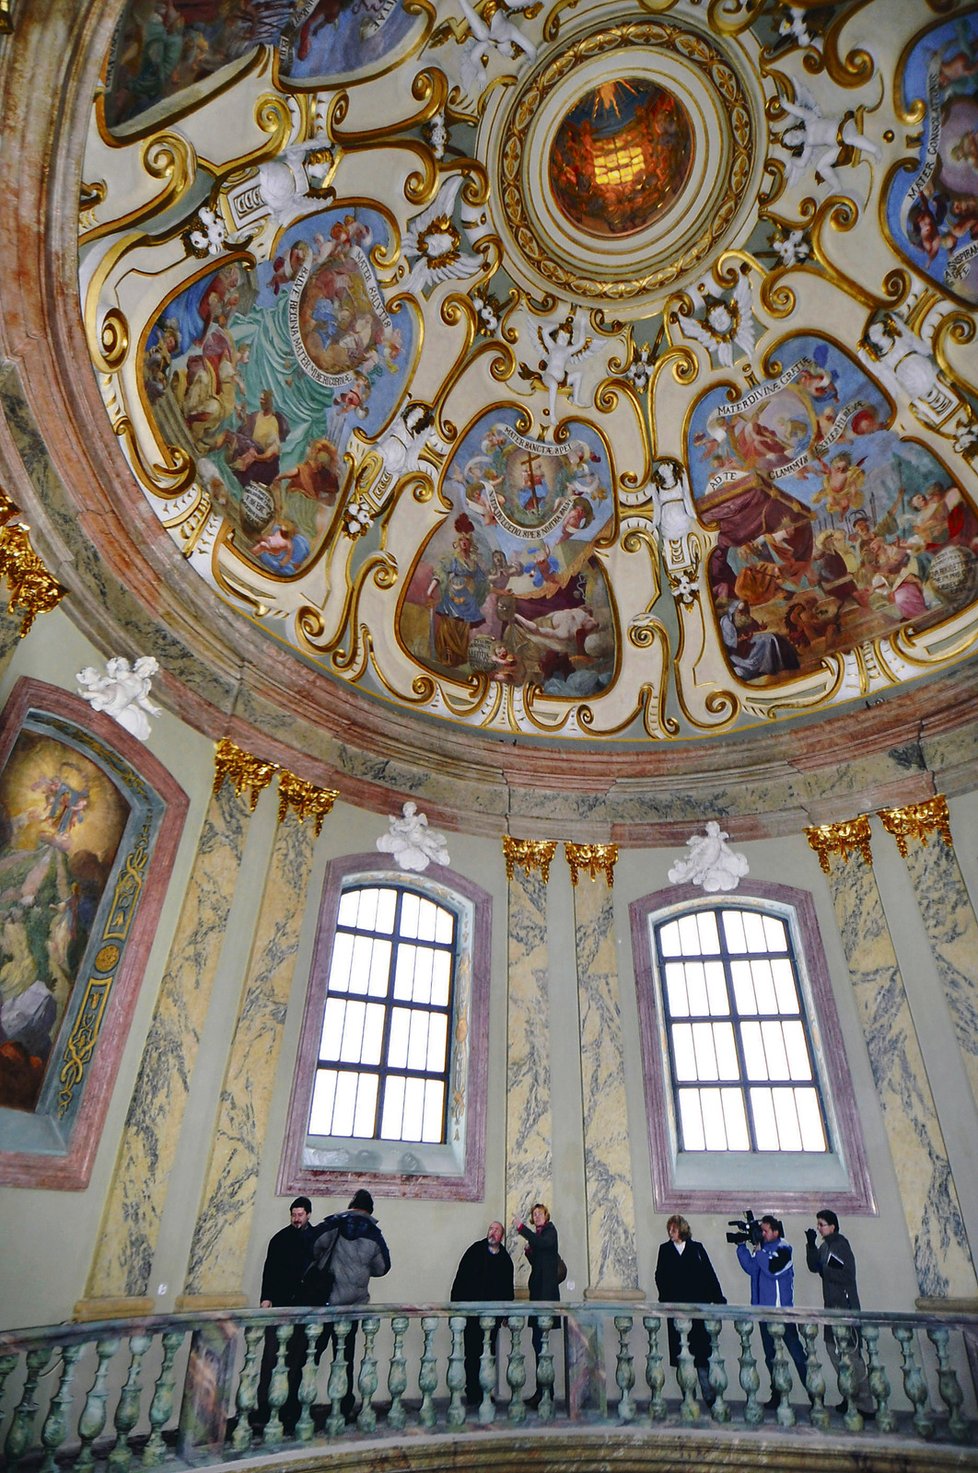 Bazilika Navštívení Panny Marie ve Svatém Kopečku u Olomouce